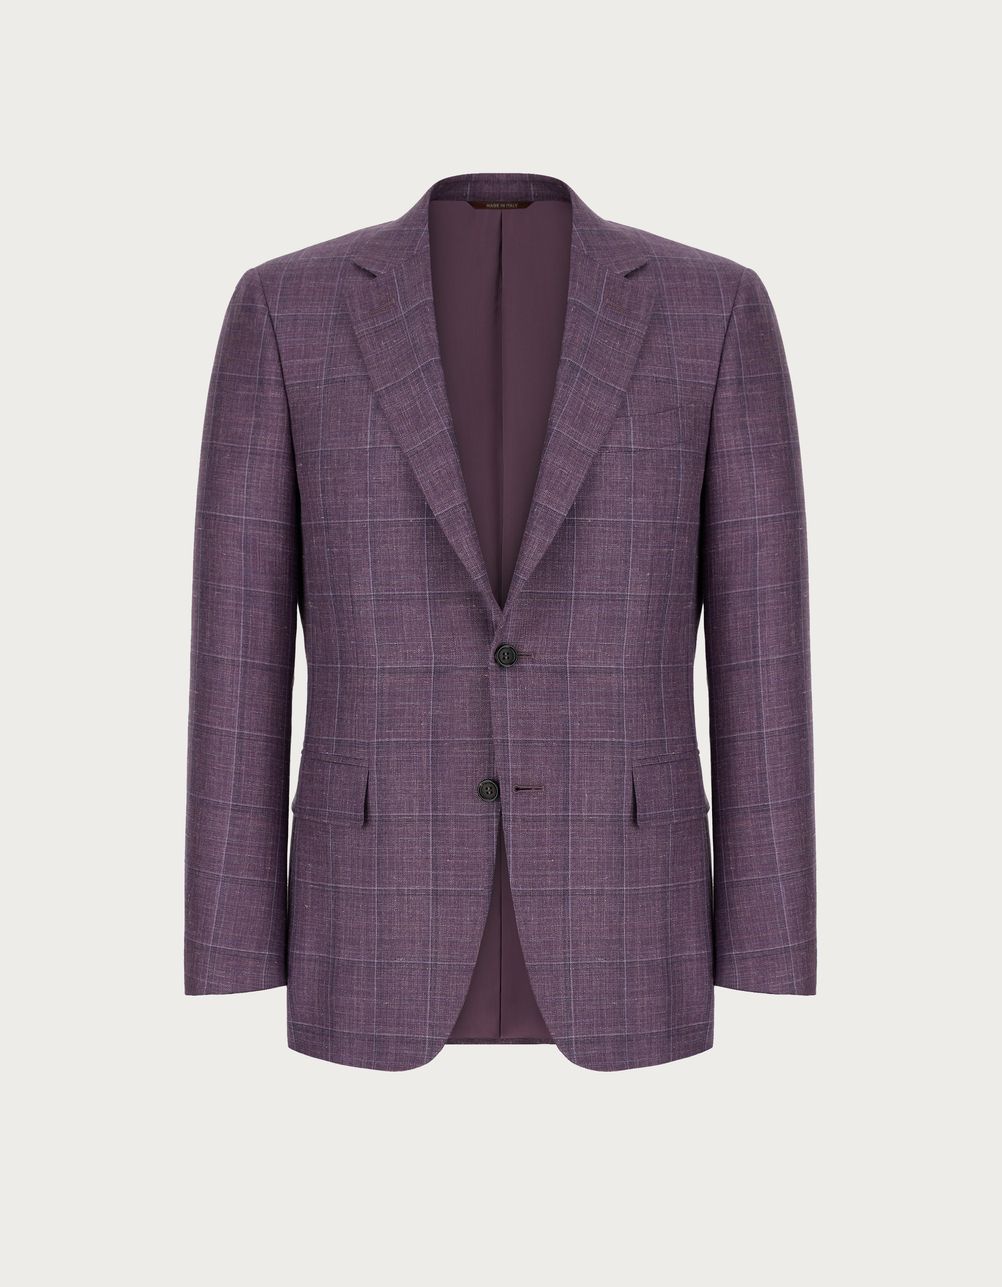 Purple overcheck blazer in wool, silk and linen